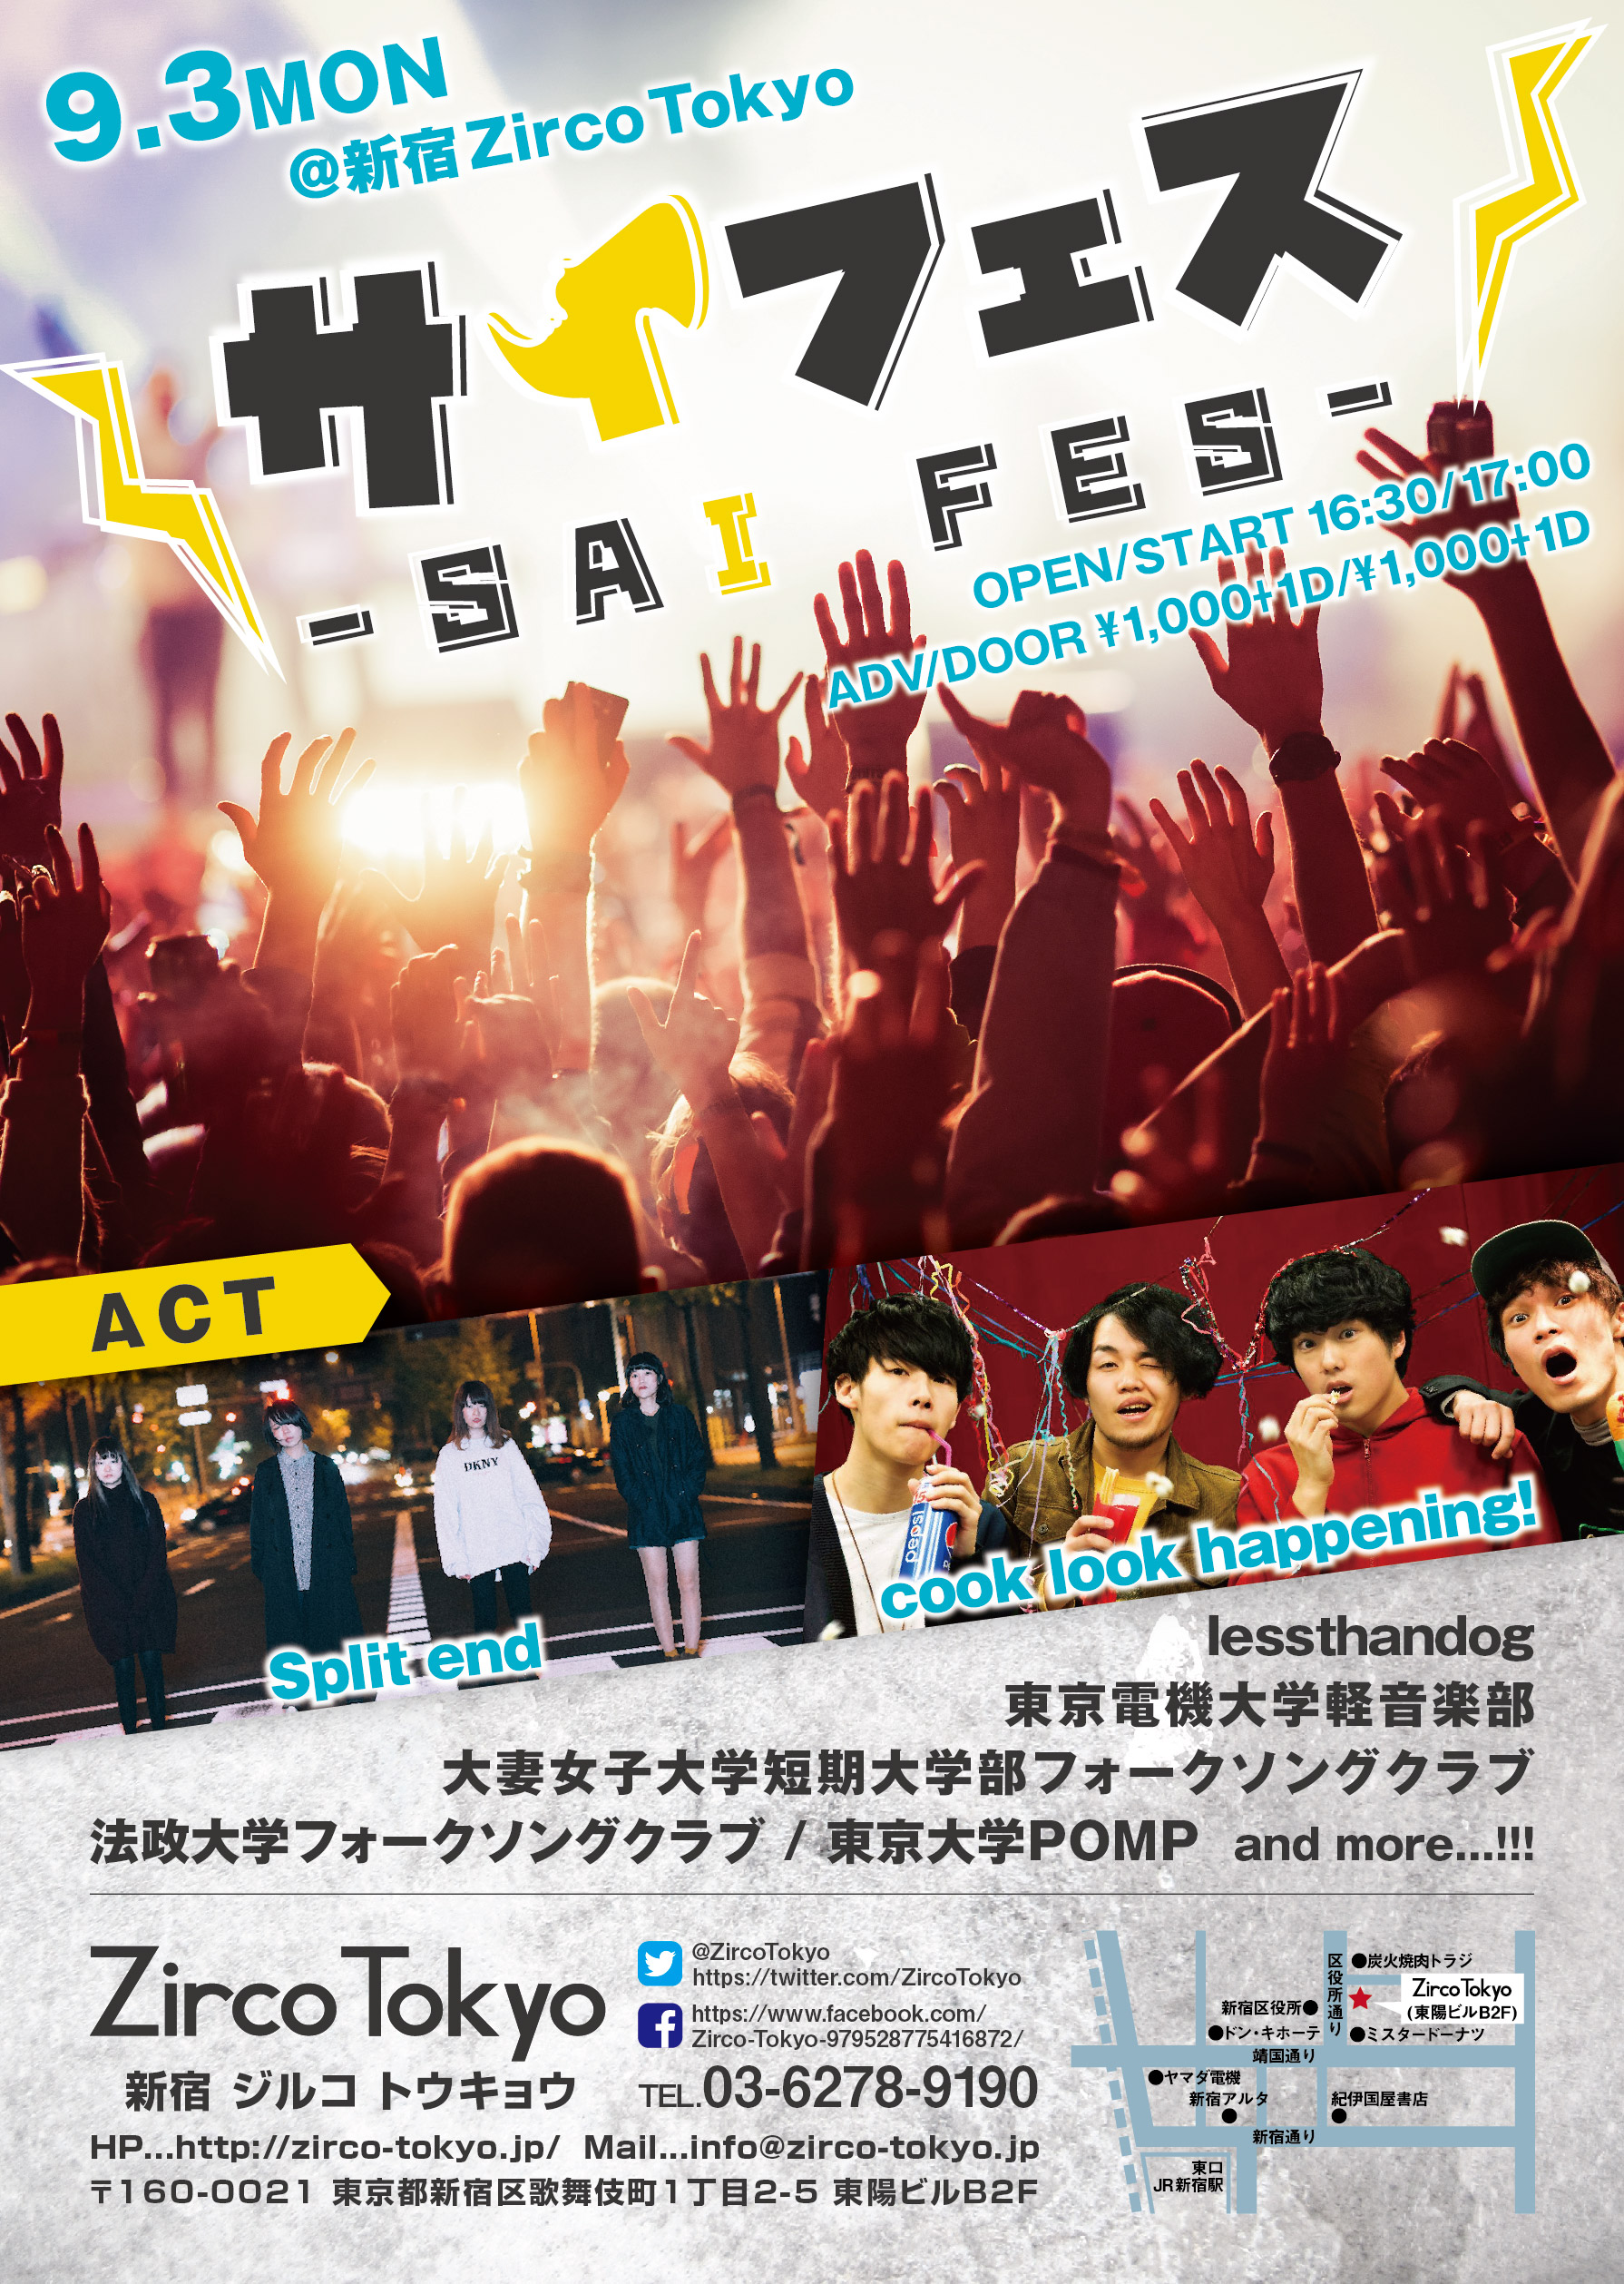 9月3日 新宿zircotokyoにて学生バンドとインディーズバンド集結の Saiフェス 開催決定